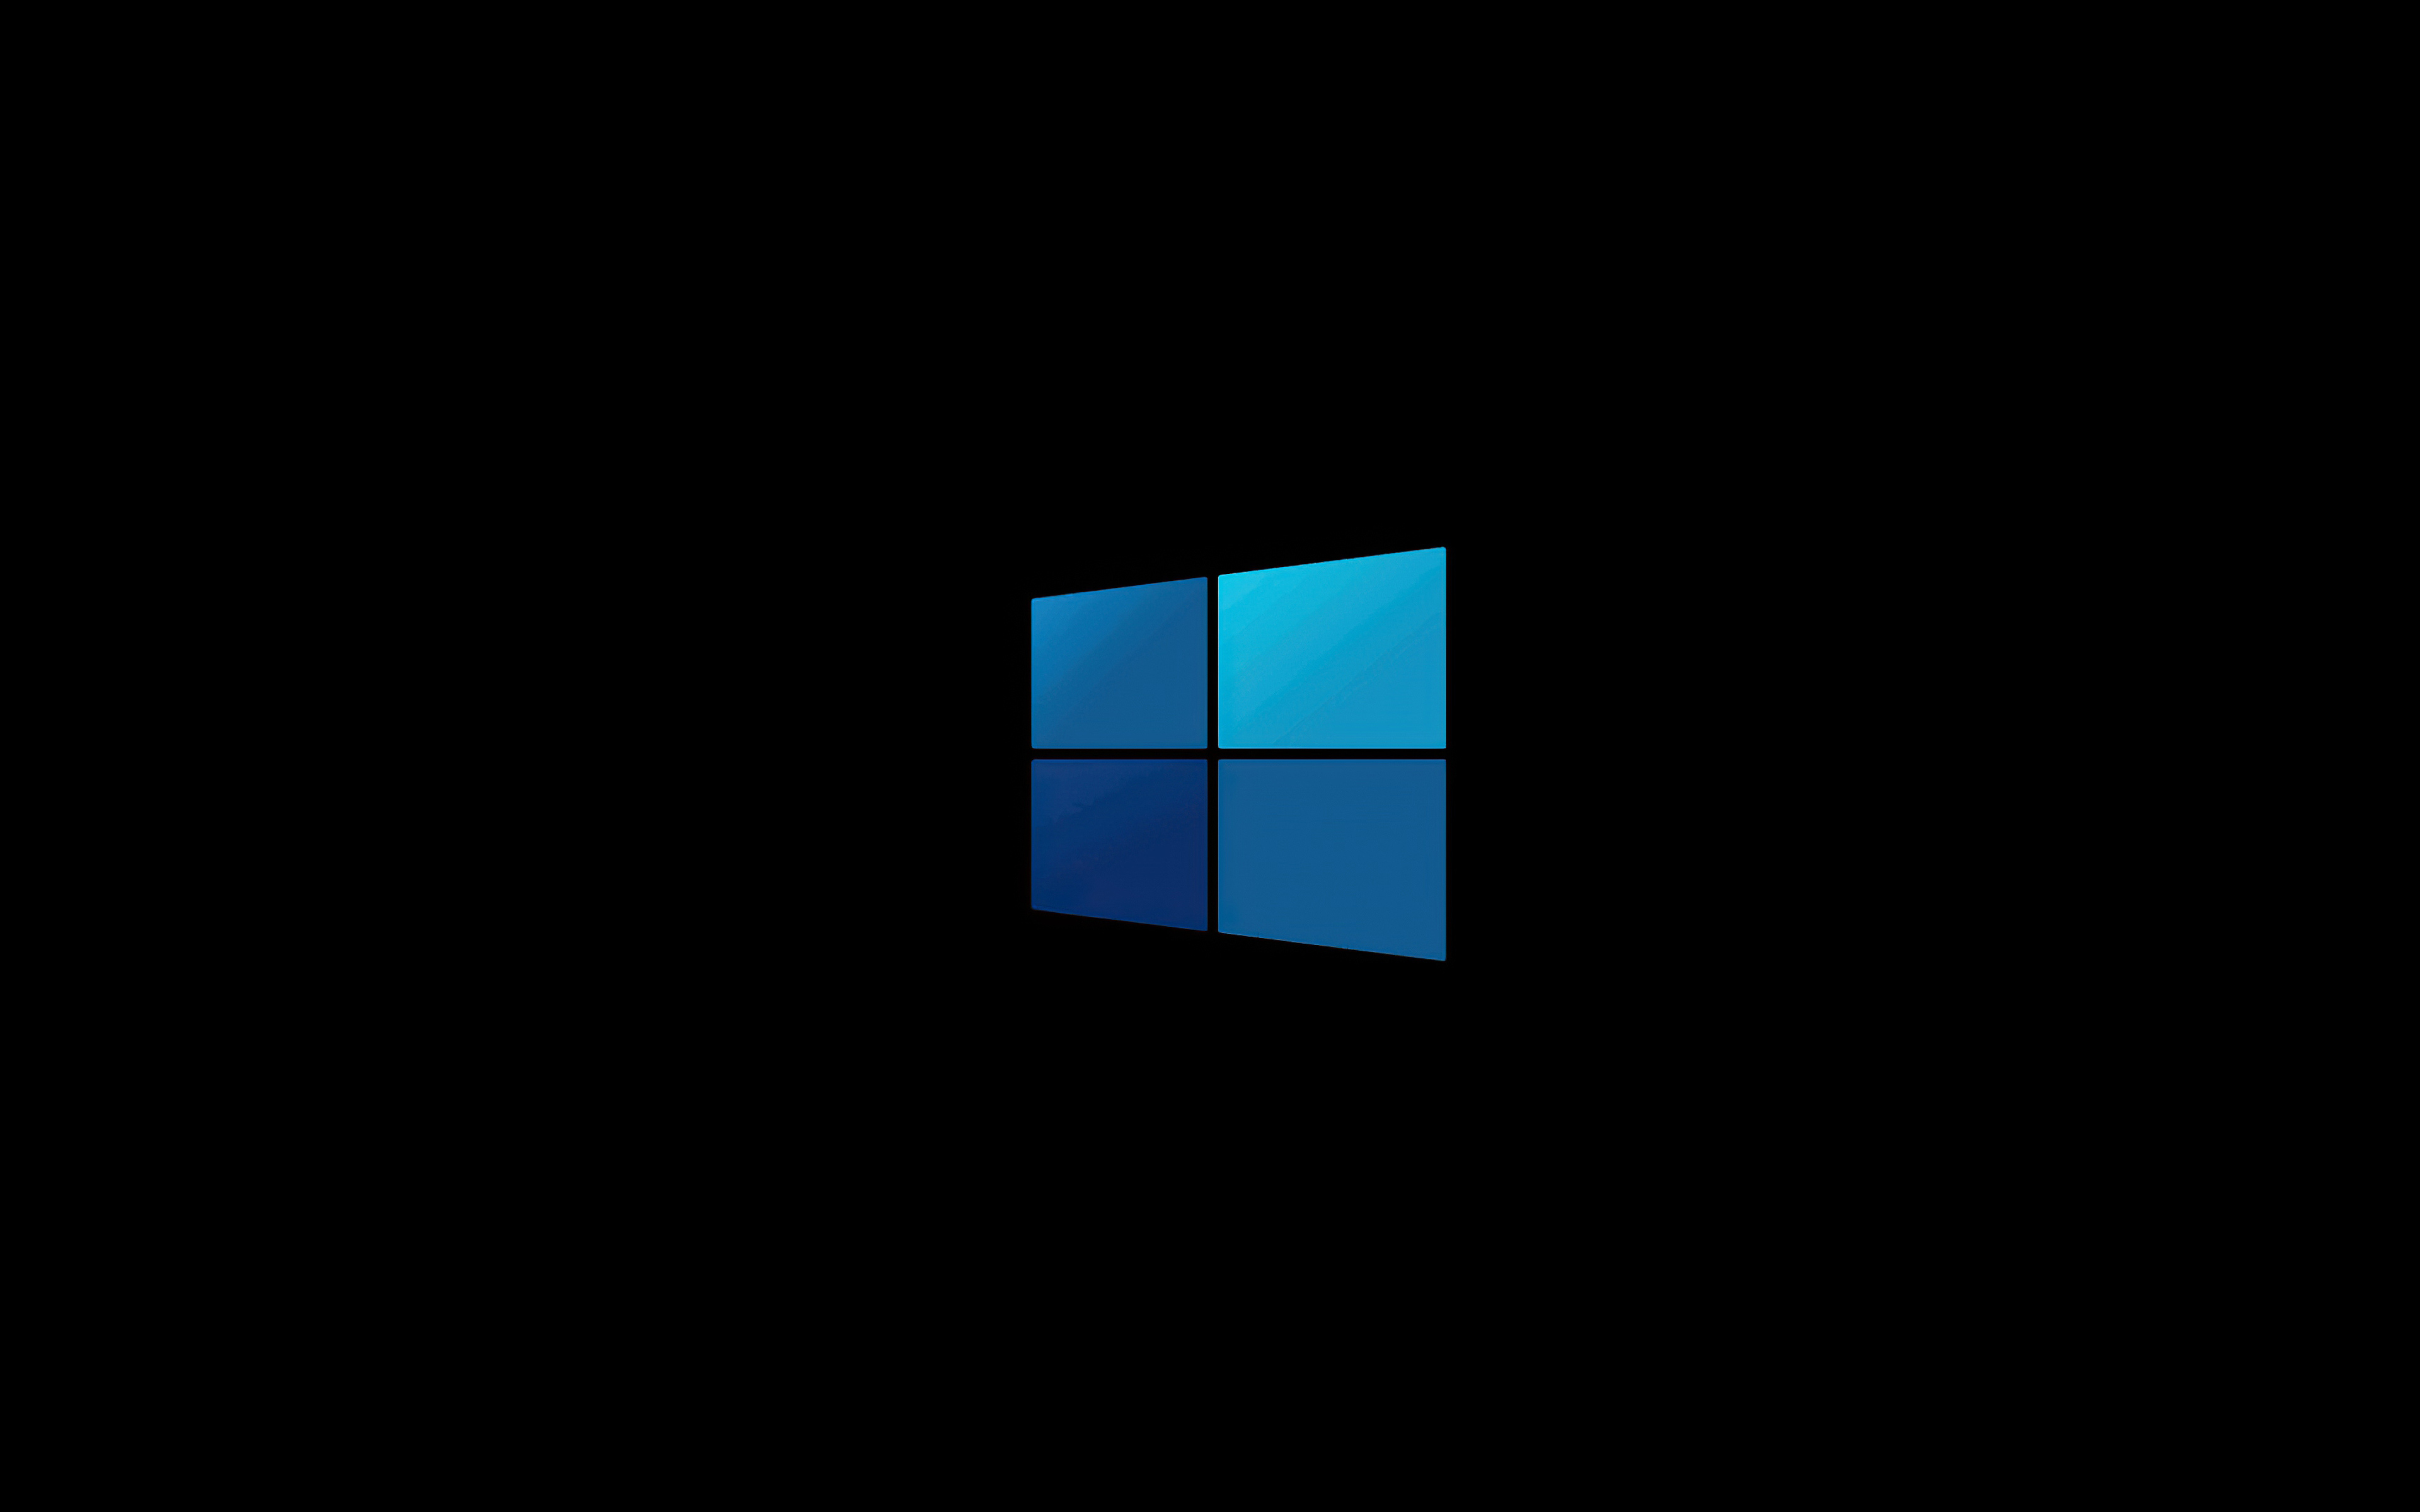 3840x2400 Windows 10 Minimal Logo 4k 4k Hd 4k Wallpapers Images